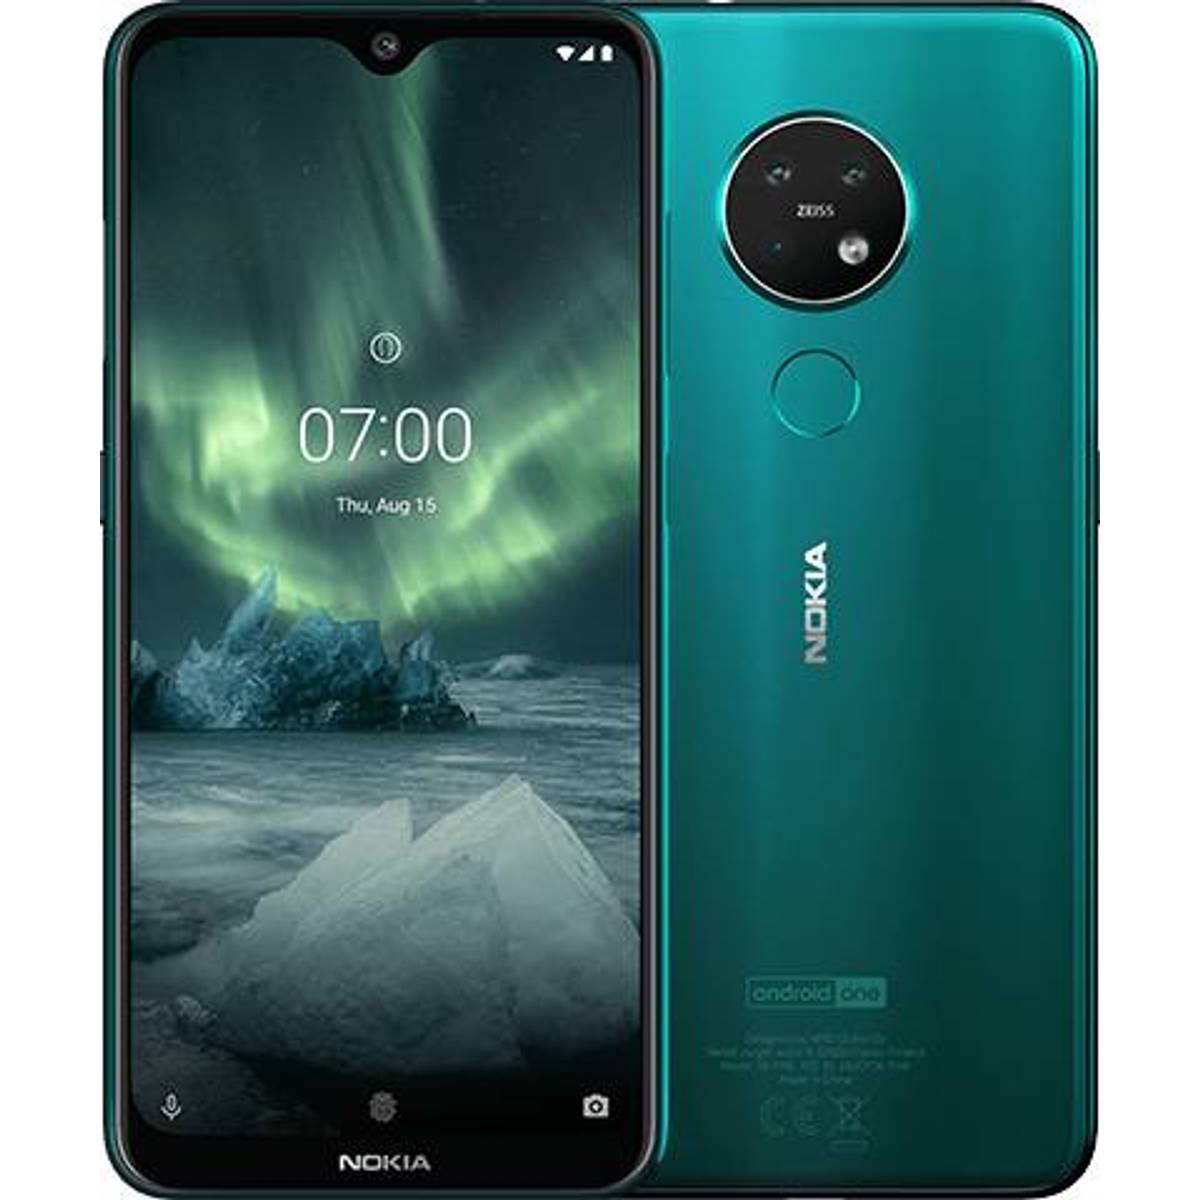 Nokia mobil - Find priser på Nokia mobiltelefoner hos PriceRunner